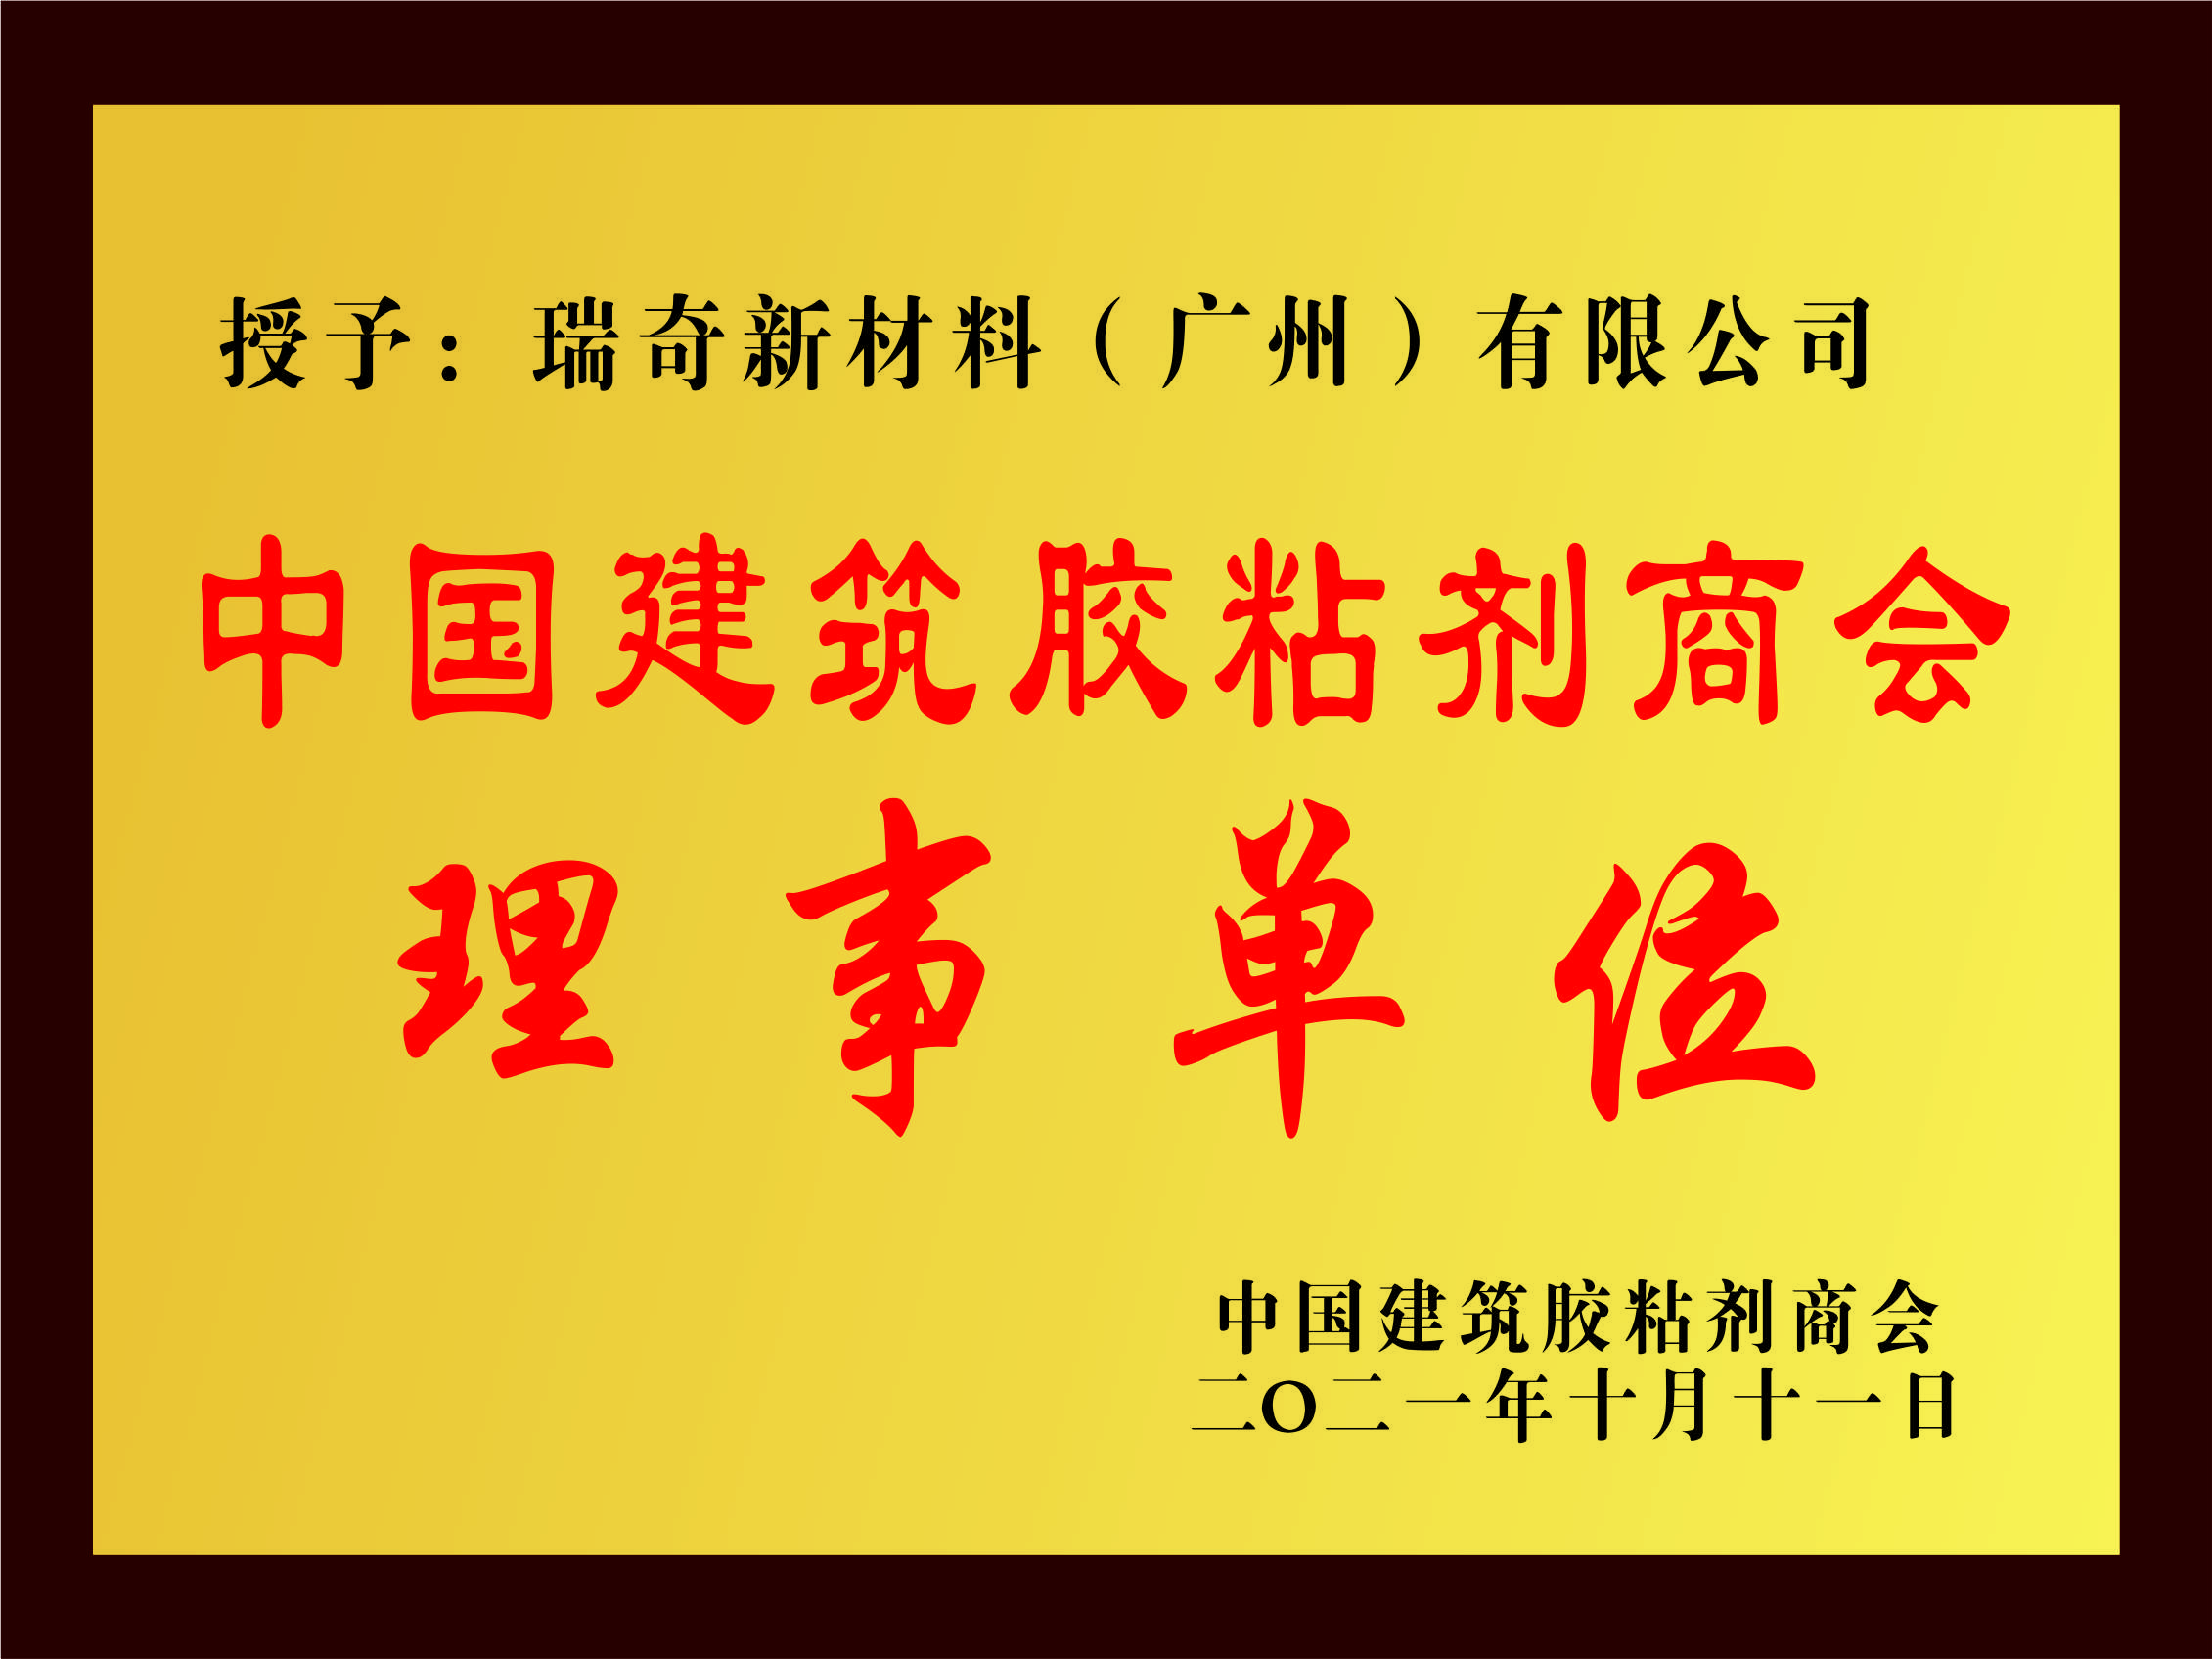 中国建筑胶粘剂商会理事单位 